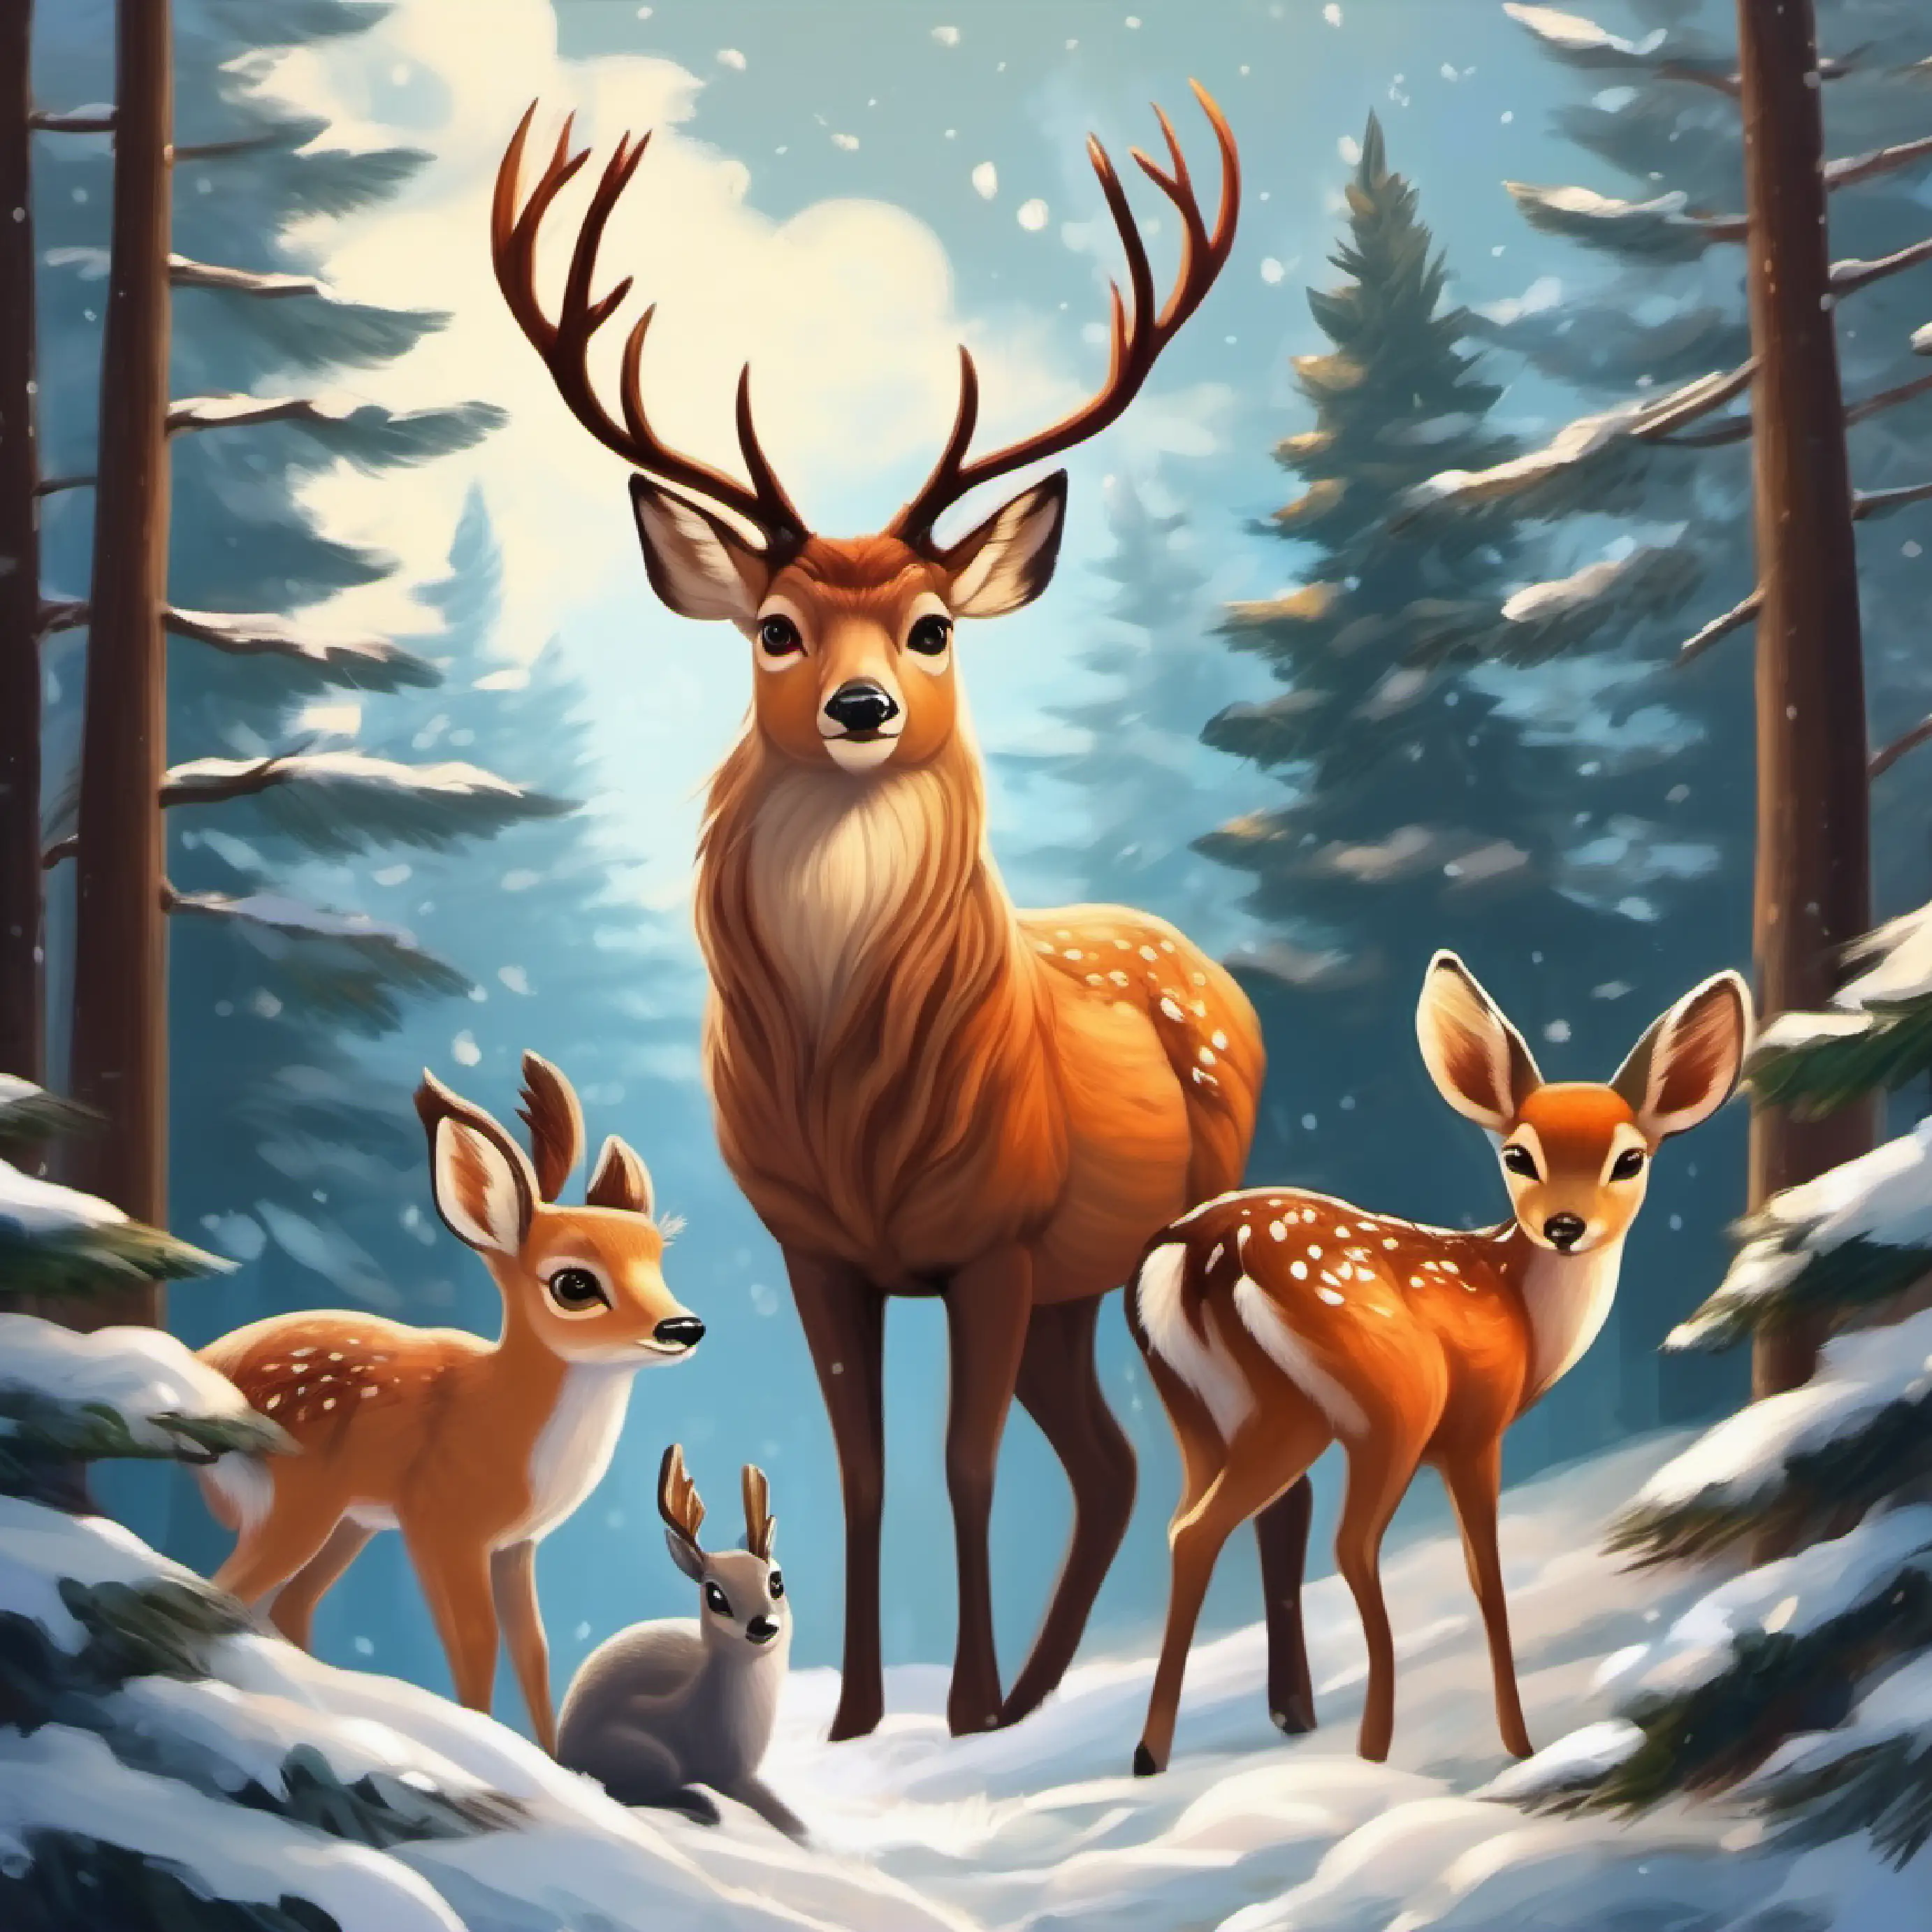 Forest animals uniting to help Kind deer, tawny fur, loving brown eyes, benevolent gaze, stormy backdrop, community effort.